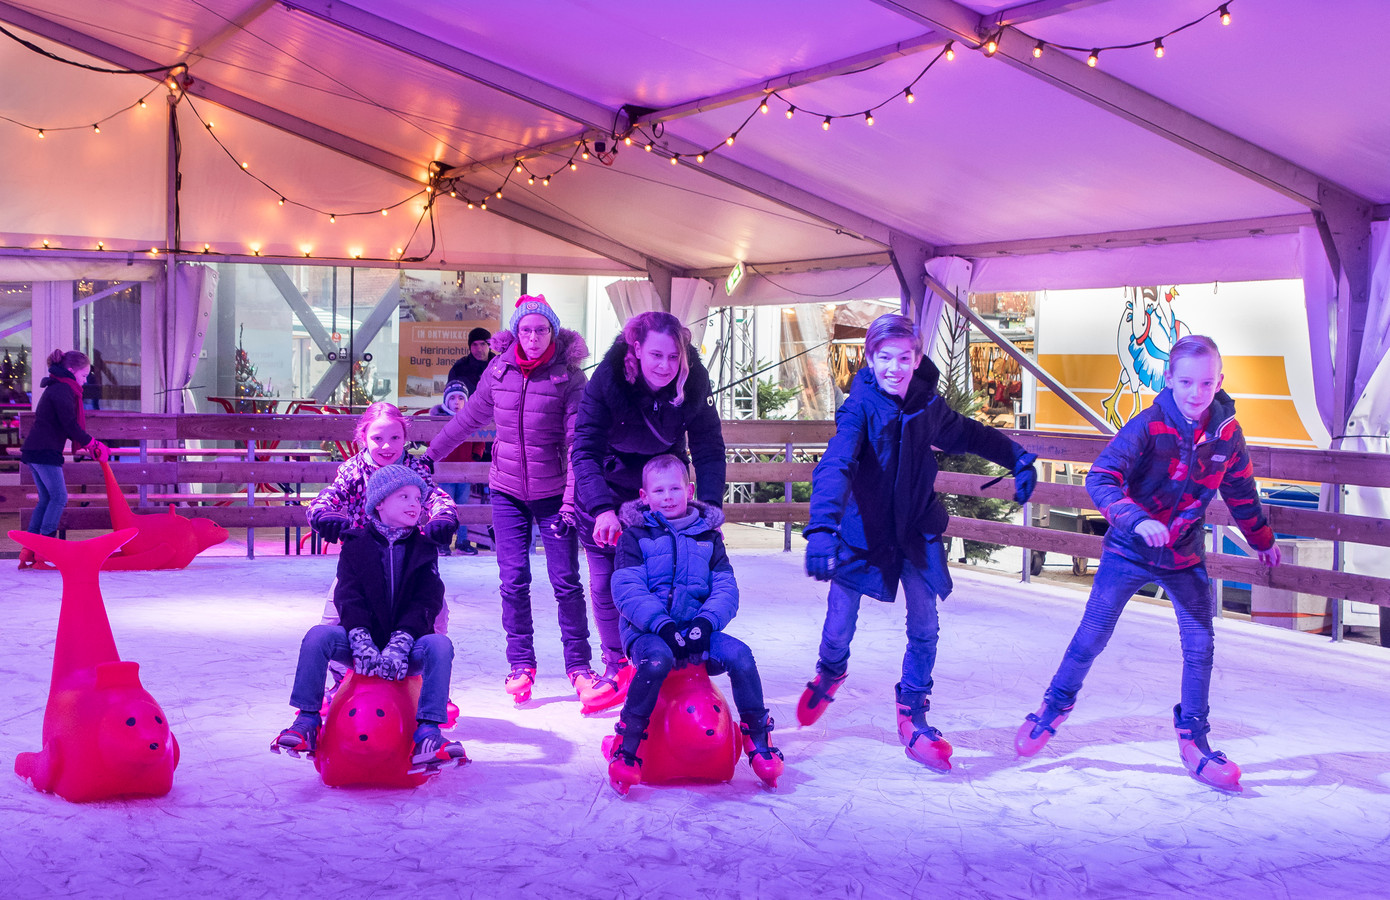 De schaatsbaan in het centrum van Hengelo, een bekende traditie in december. Het baantje wordt dit jaar niet opgebouwd.